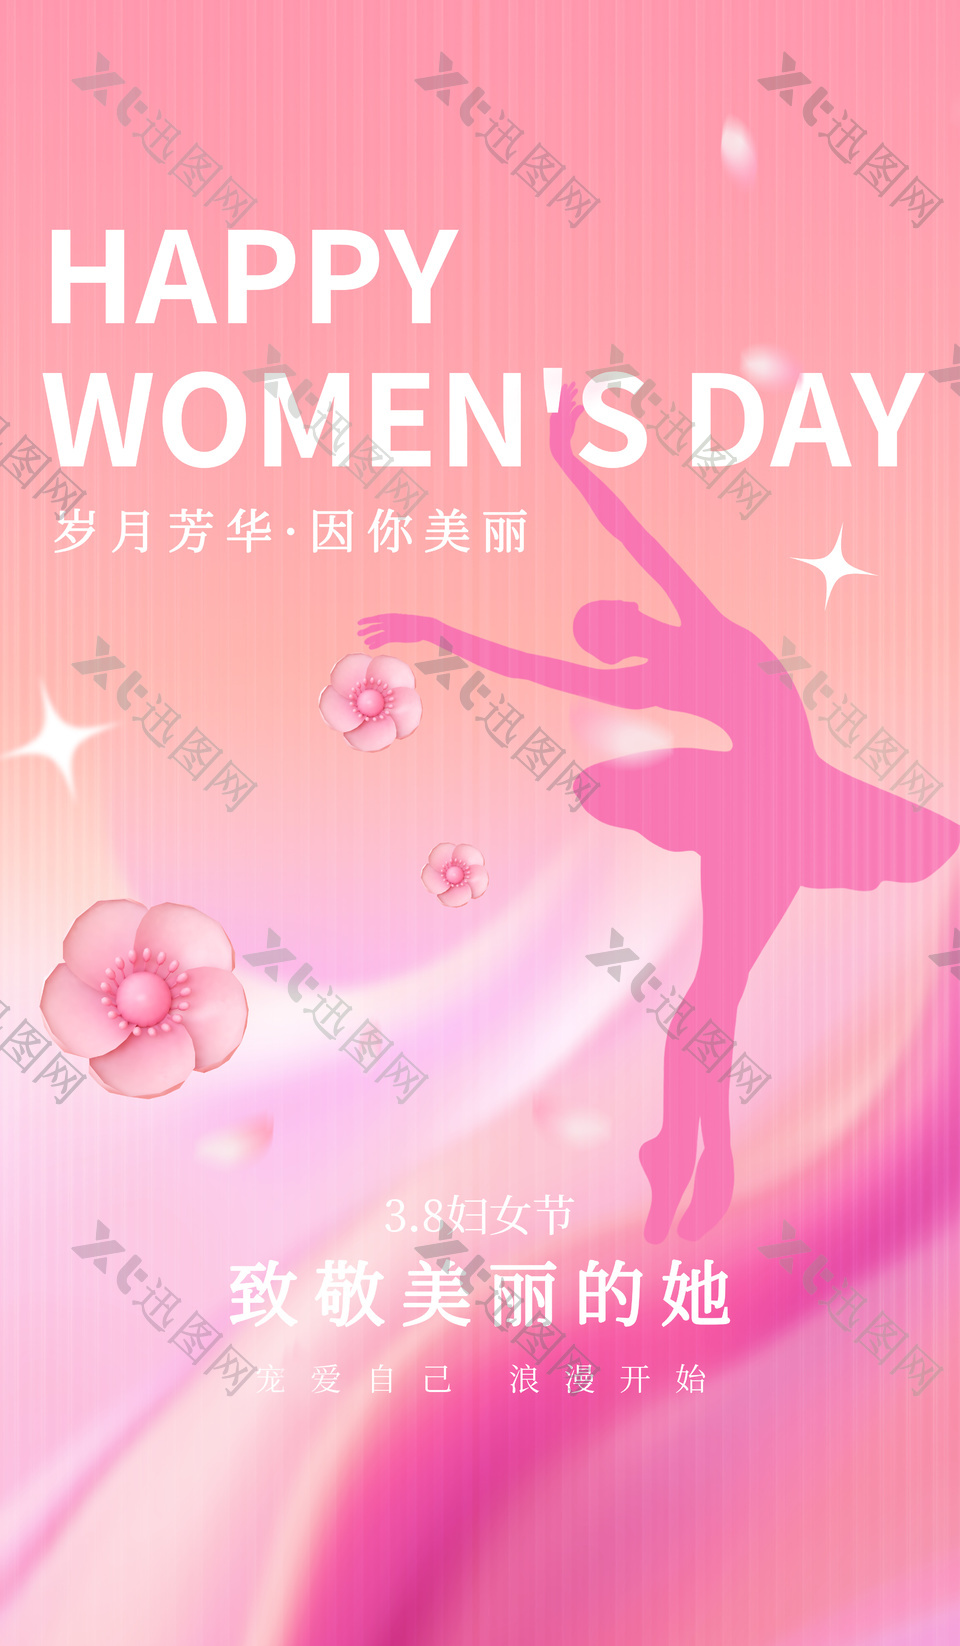 3.8妇女节致敬美丽的她梦幻剪影海报